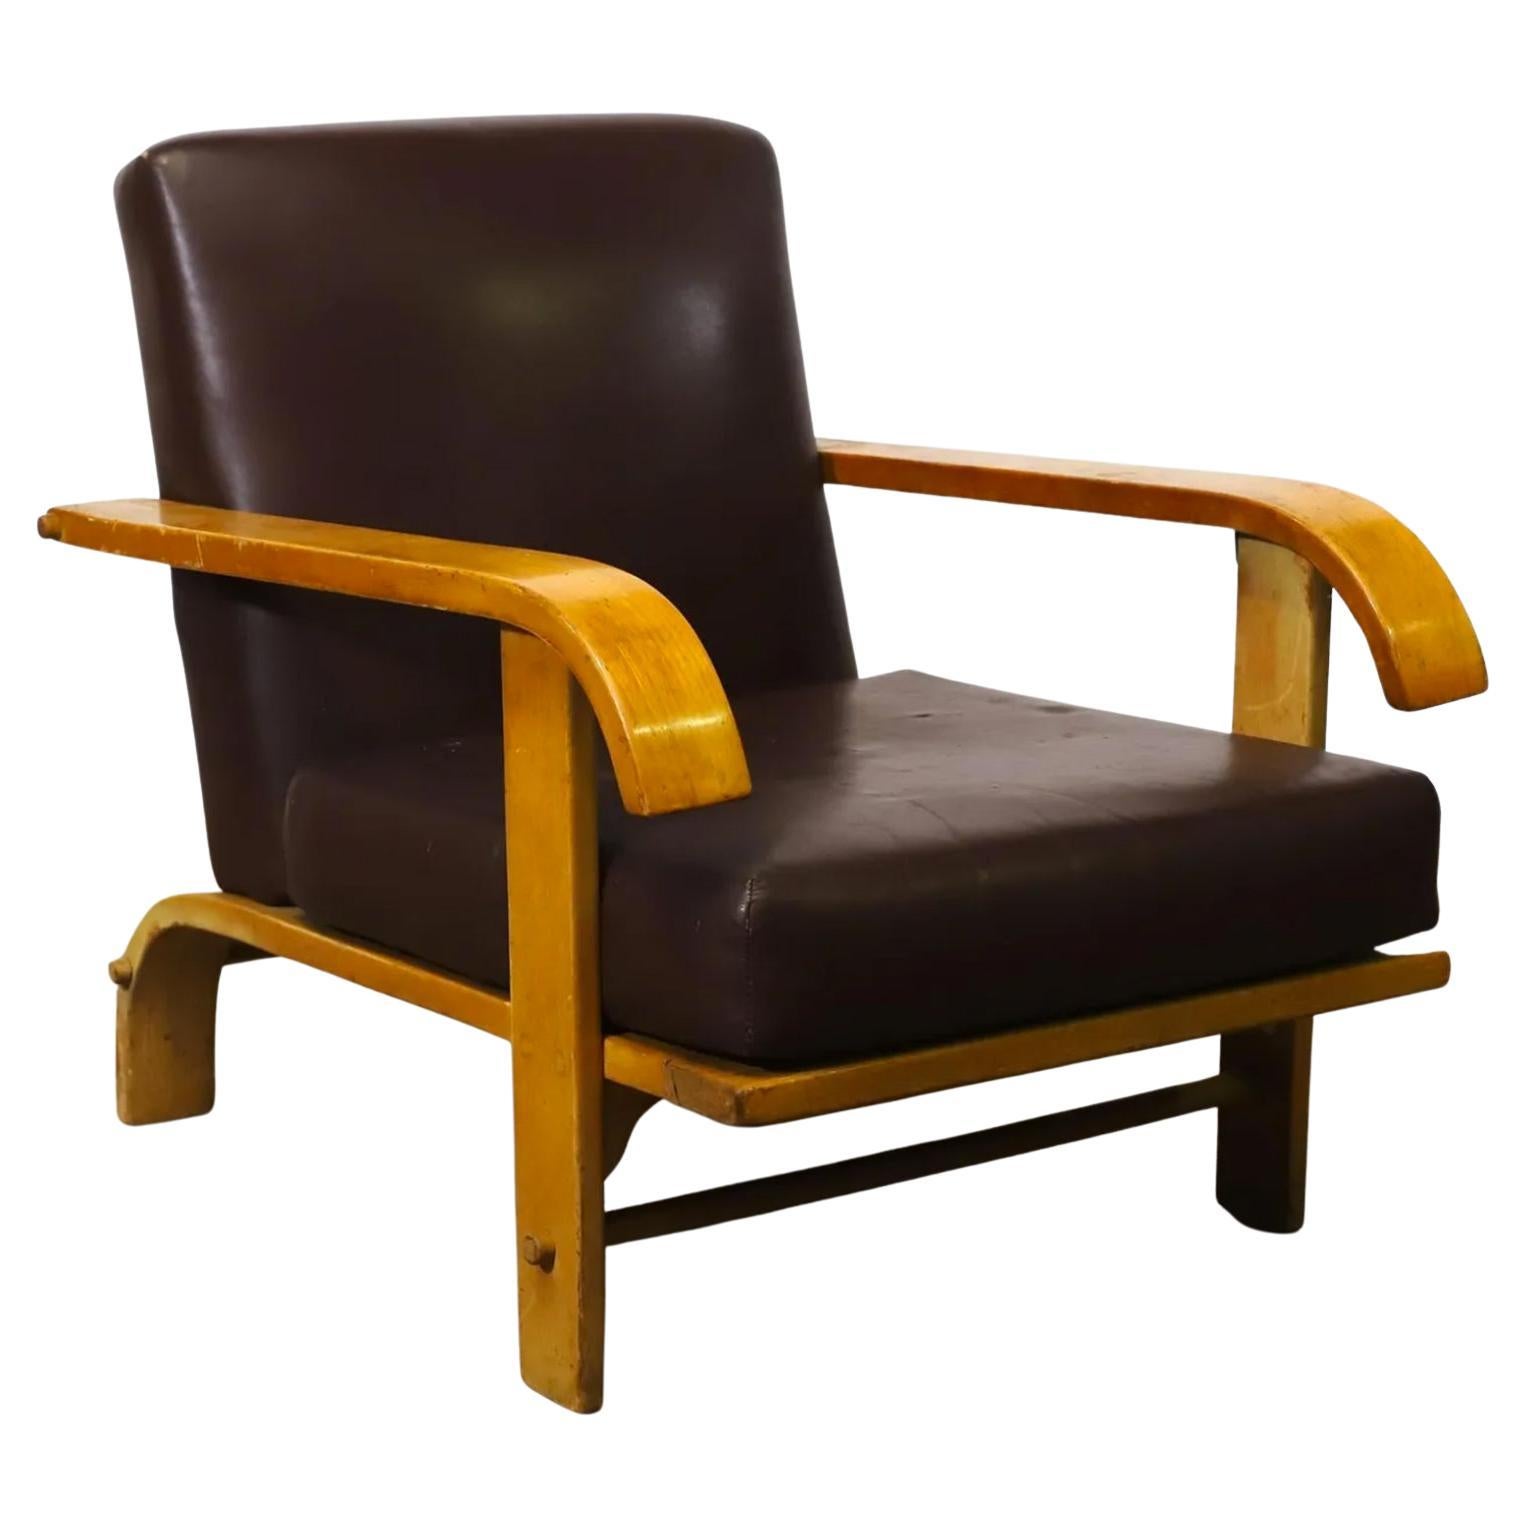 Seltenes Original aus der Mitte des Jahrhunderts von Russel Wright für Conant Ball. Niedriger Sessel aus Ahornholz. Die Arme sind einzigartig nach unten gebogen - tolles Design. Rahmen aus massivem Ahornholz mit geschwungenen Rückenbeinen und